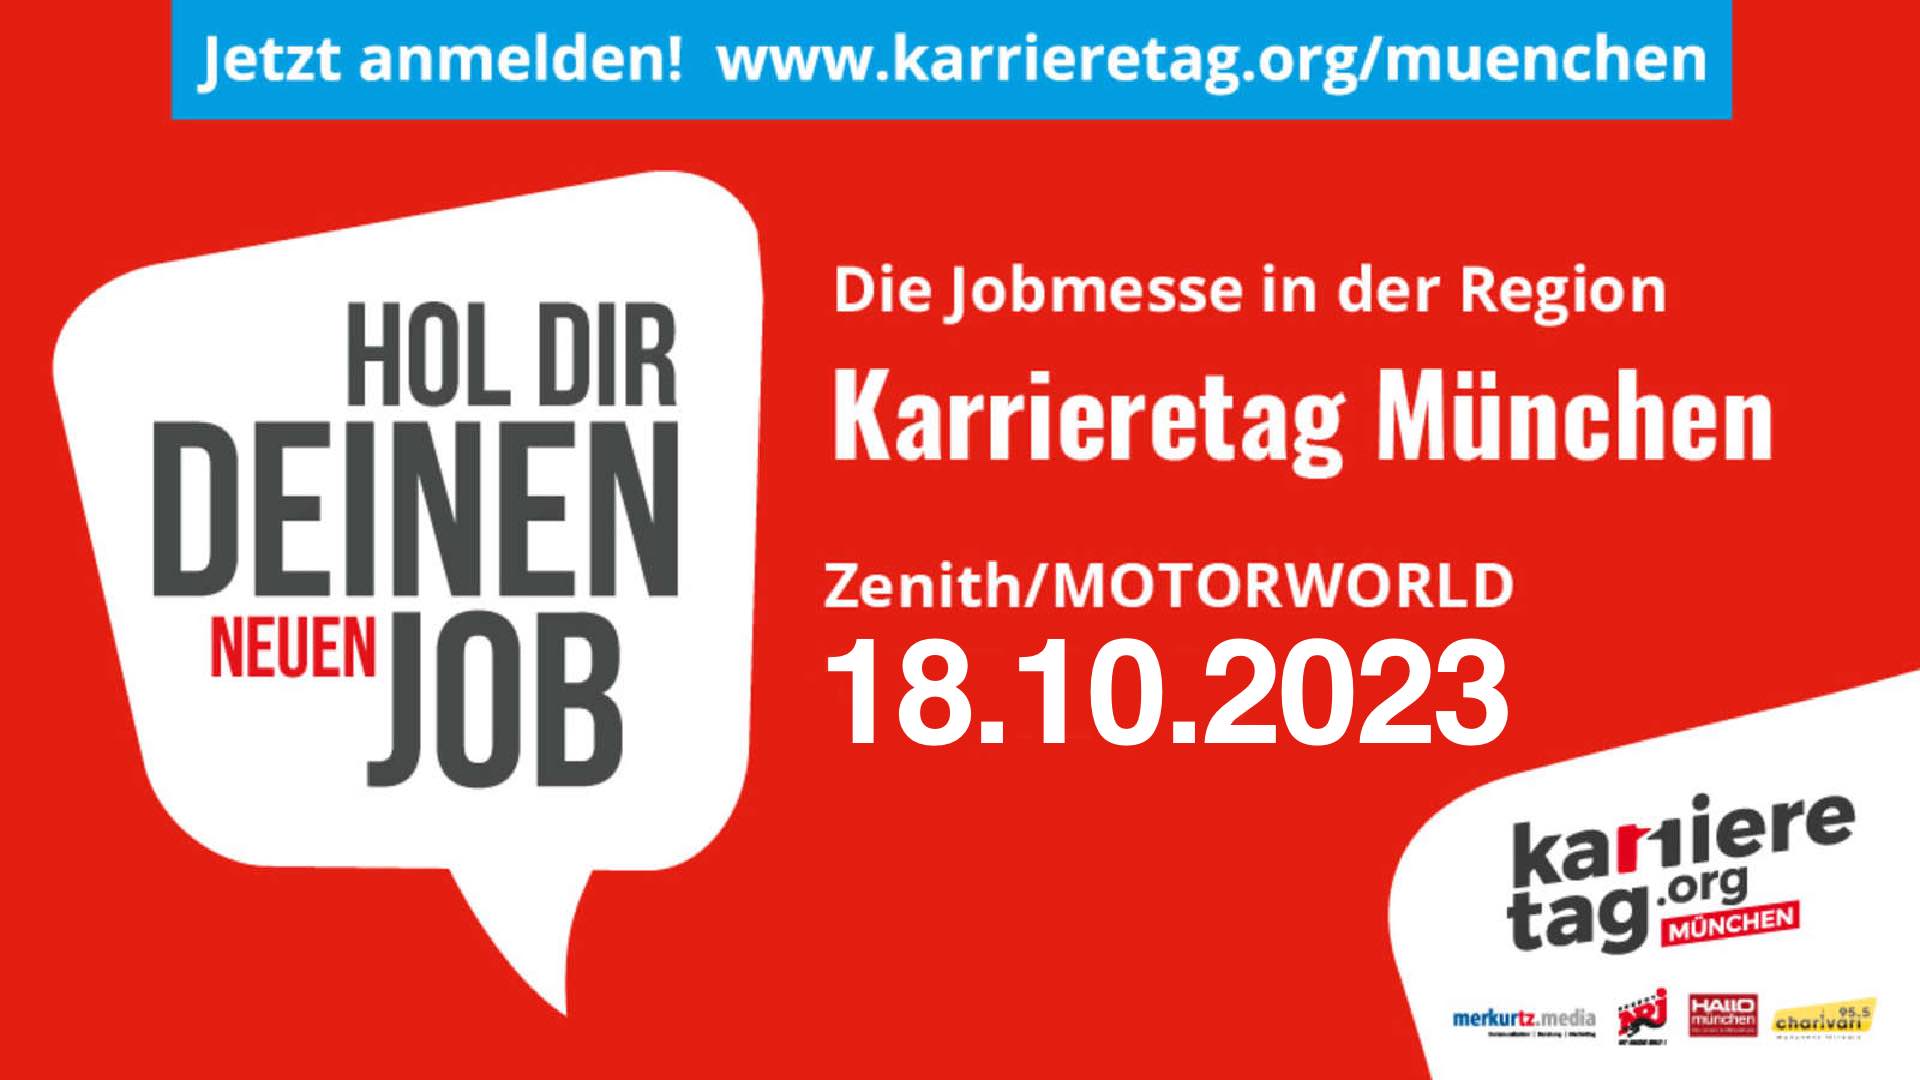 Karrieretag München 2023 - Hol Dir Deinen Job!